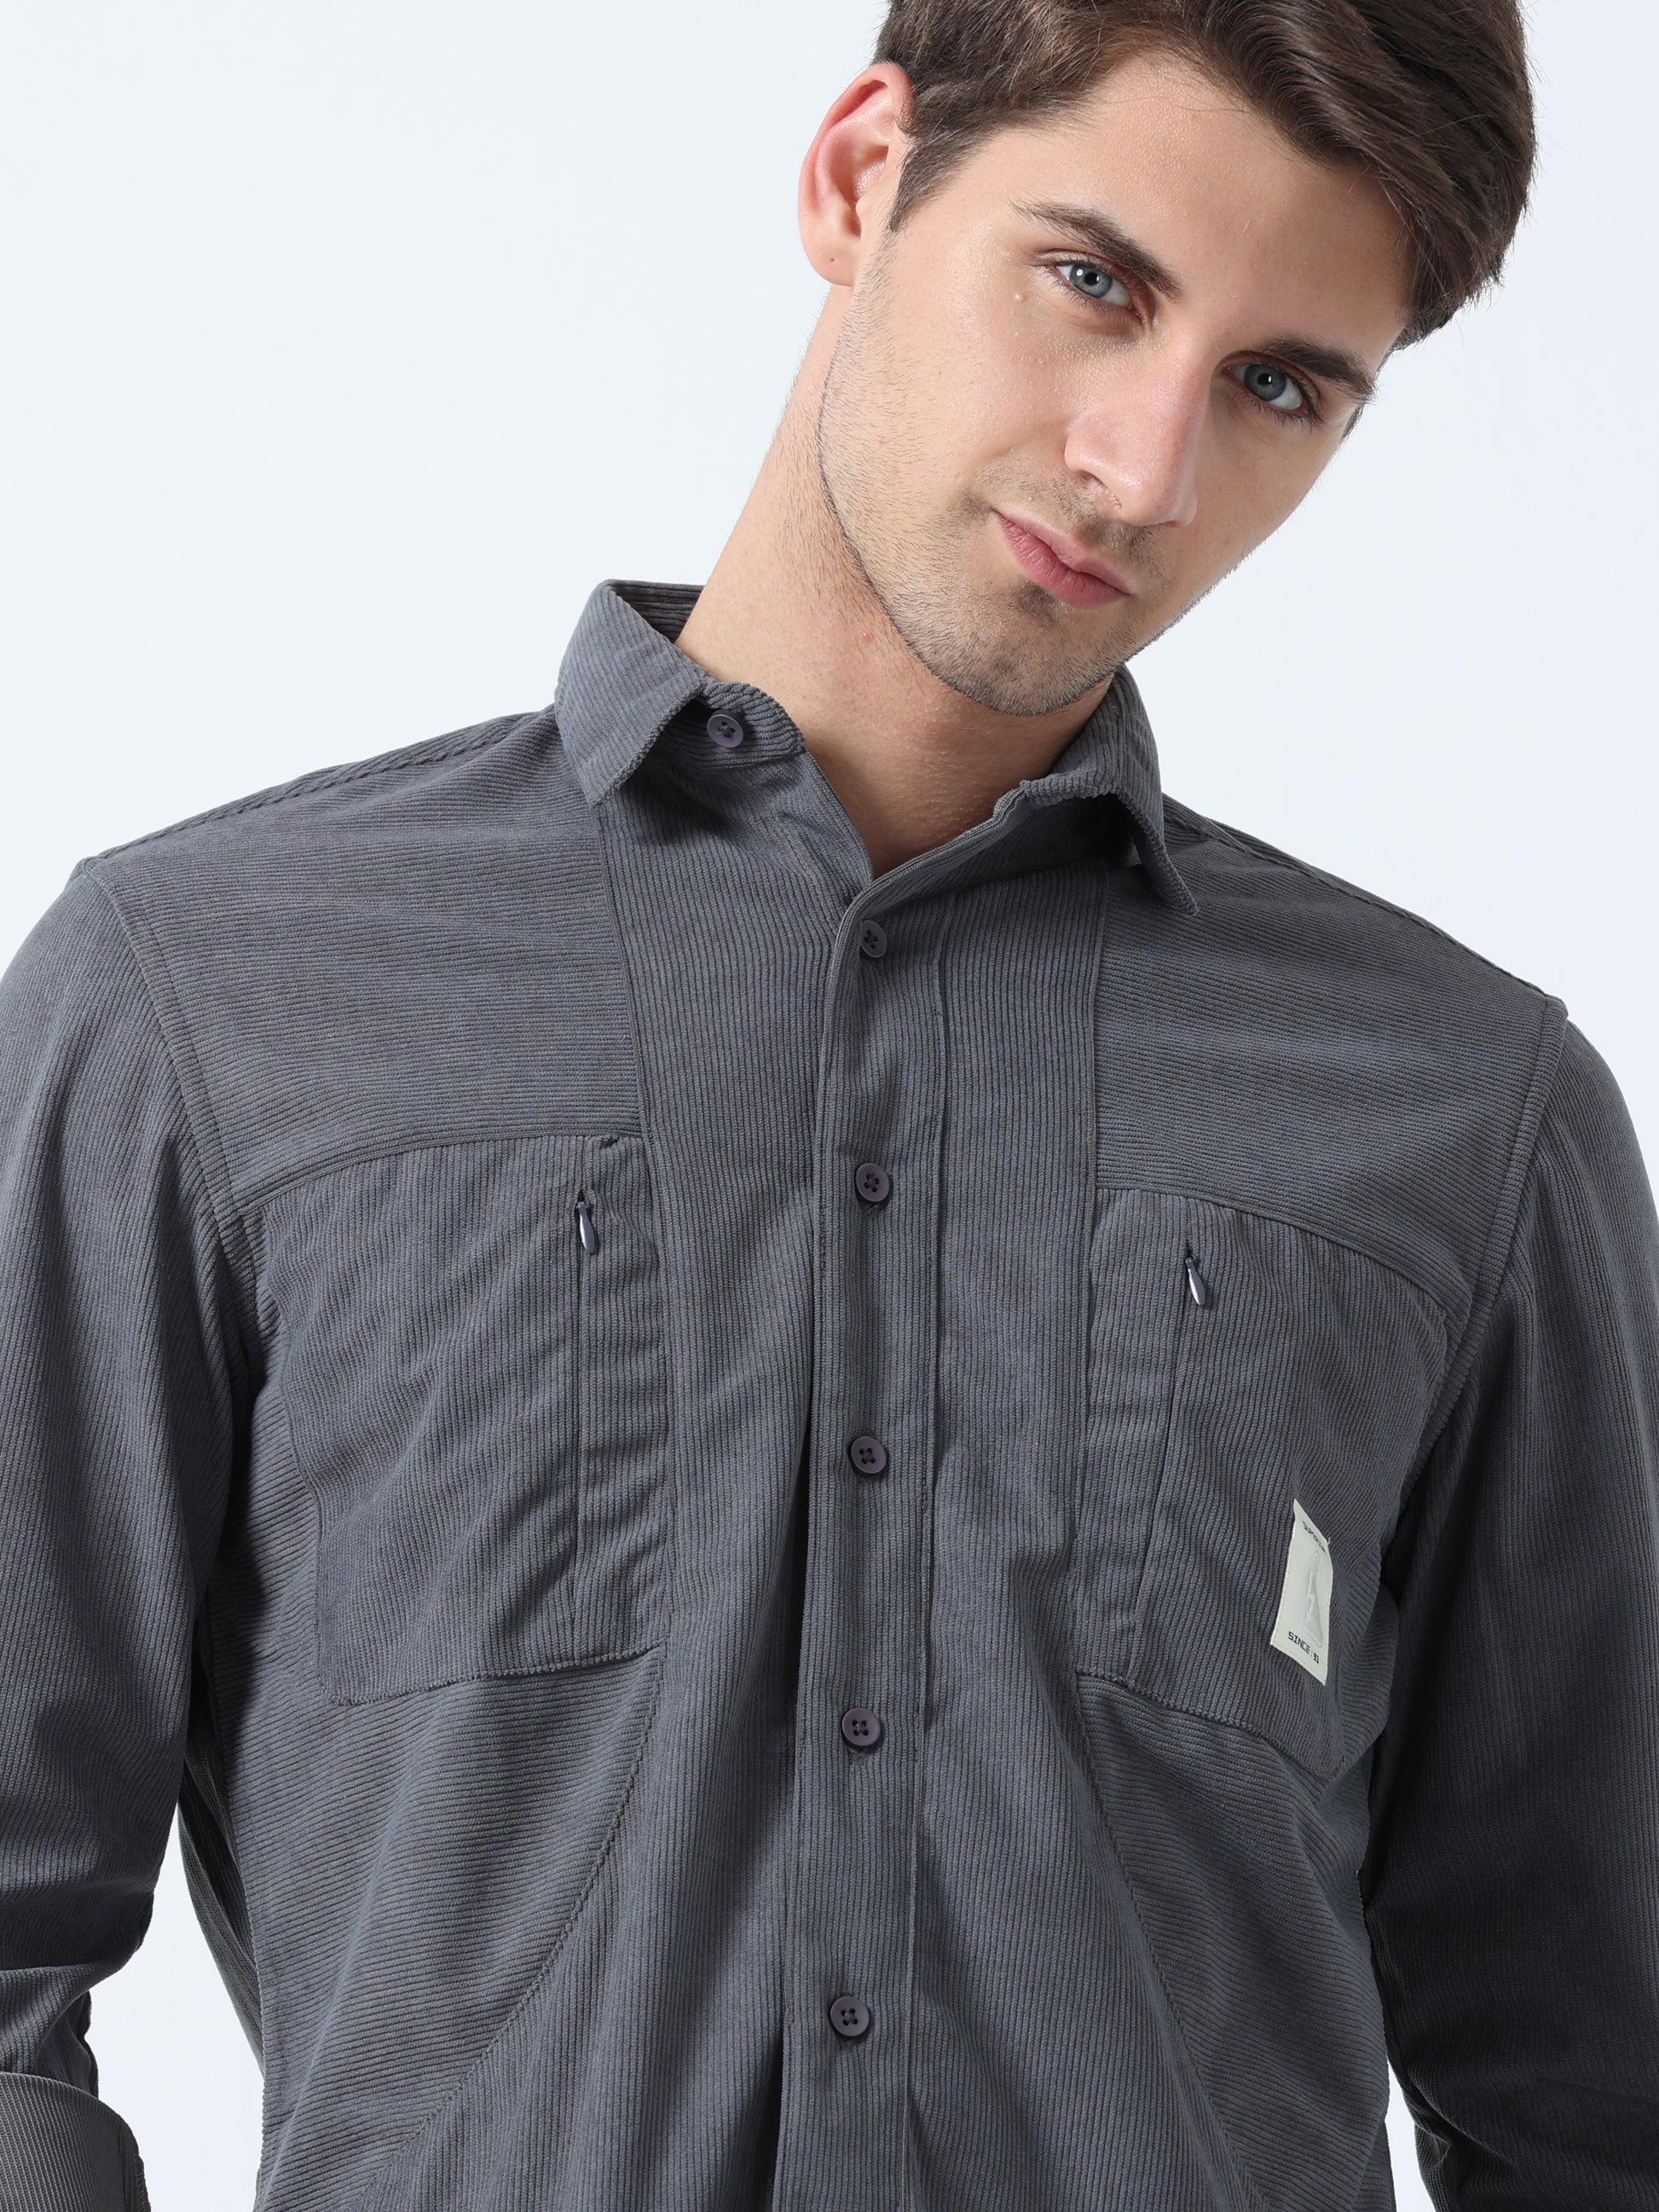 Dark Grey Double-Pocket Men's Full Sleeve Plain Shirt